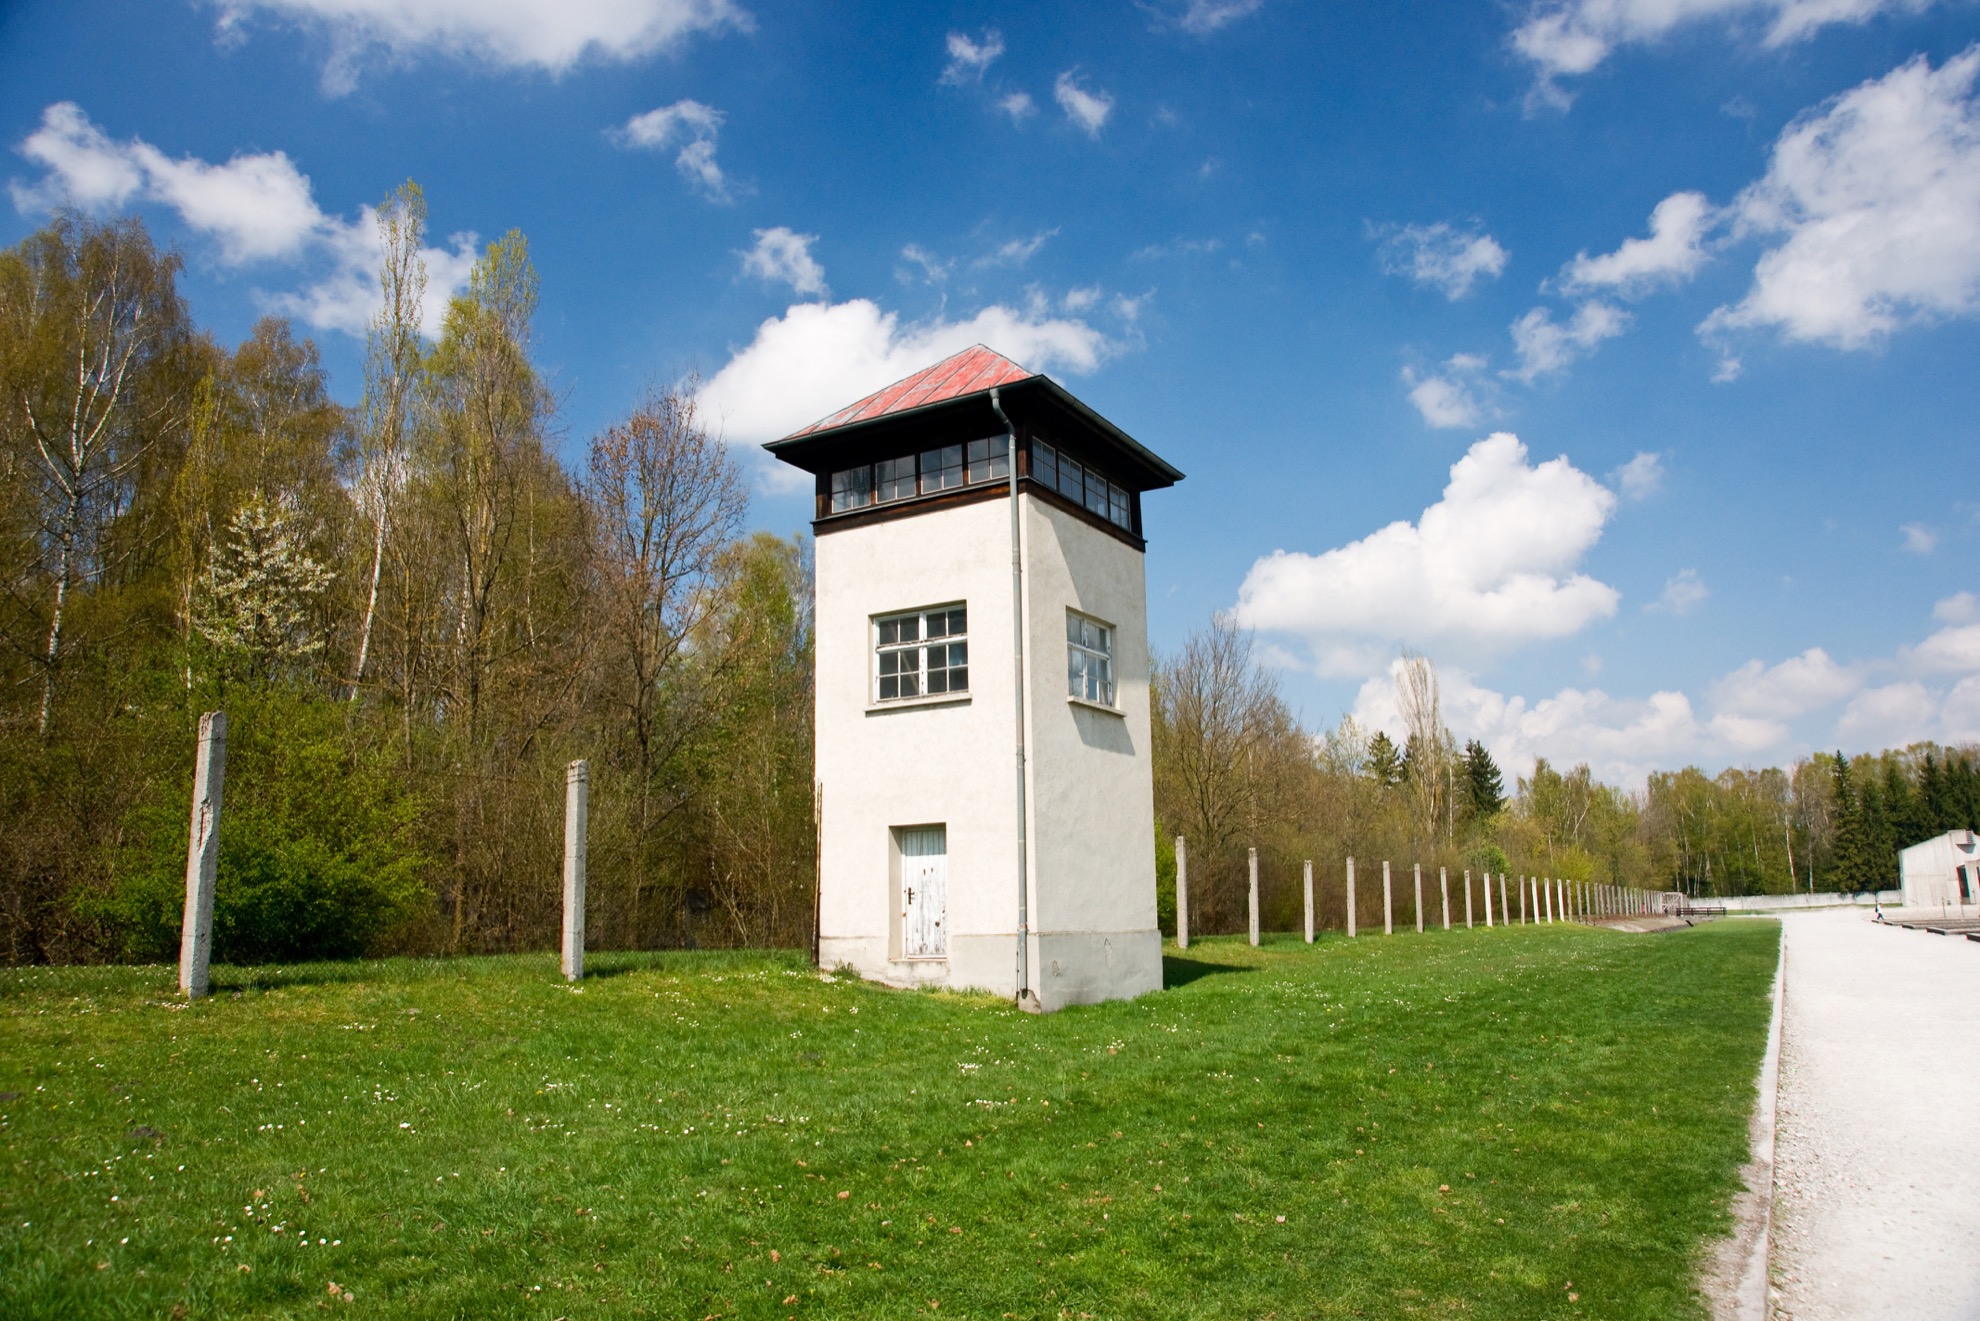 Qué saber sobre el campo de concentración de Dachau antes de visitar - 7